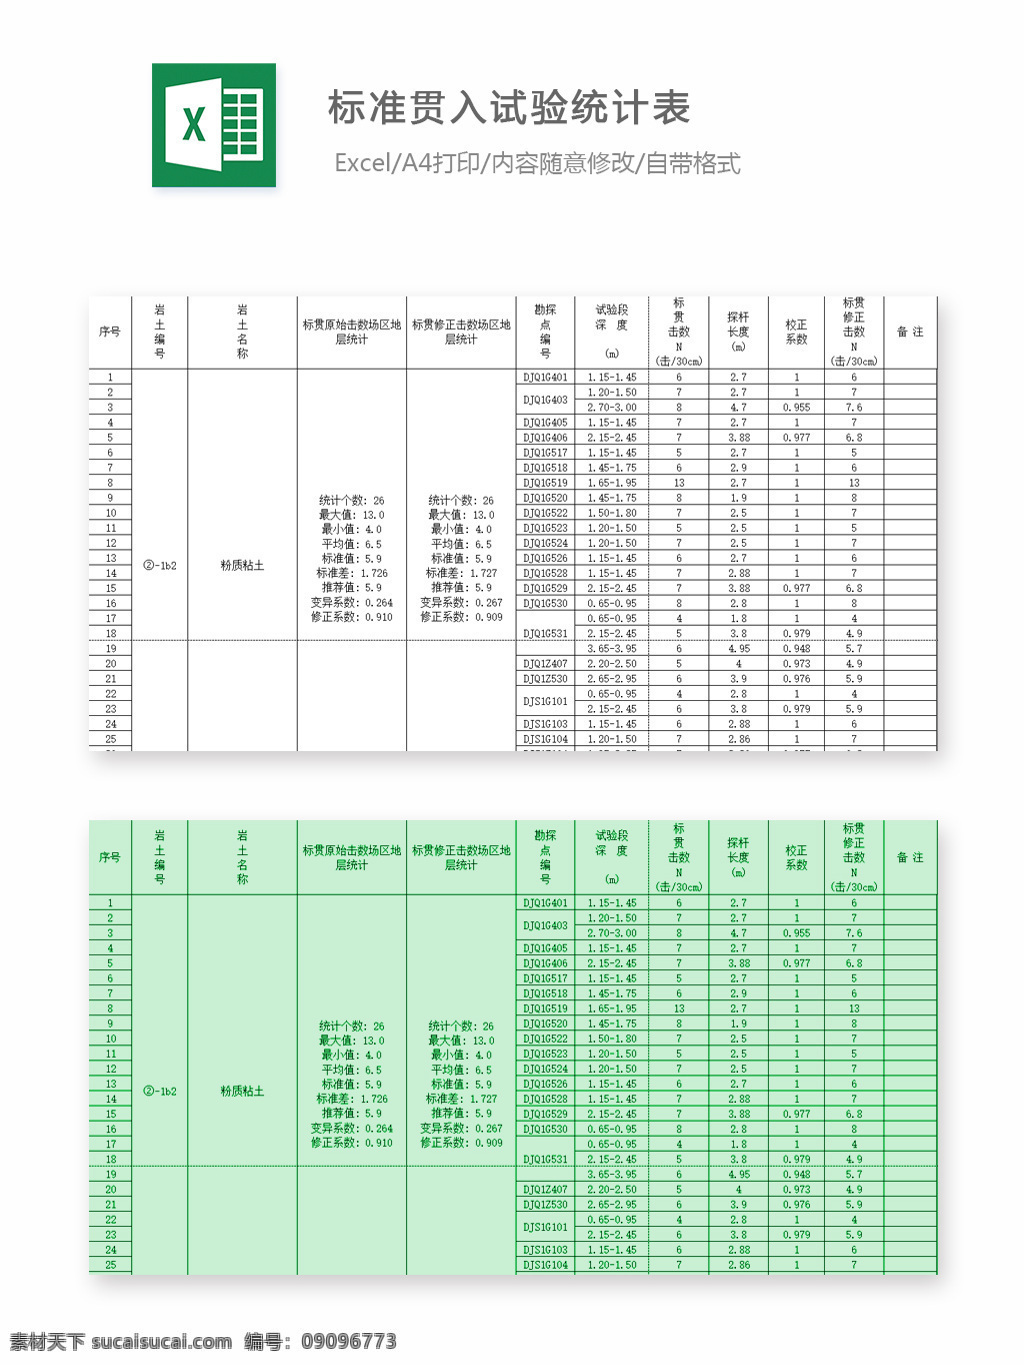 标准 贯 入 试验 统计表 表格 表格模板 表格设计 图表 统计